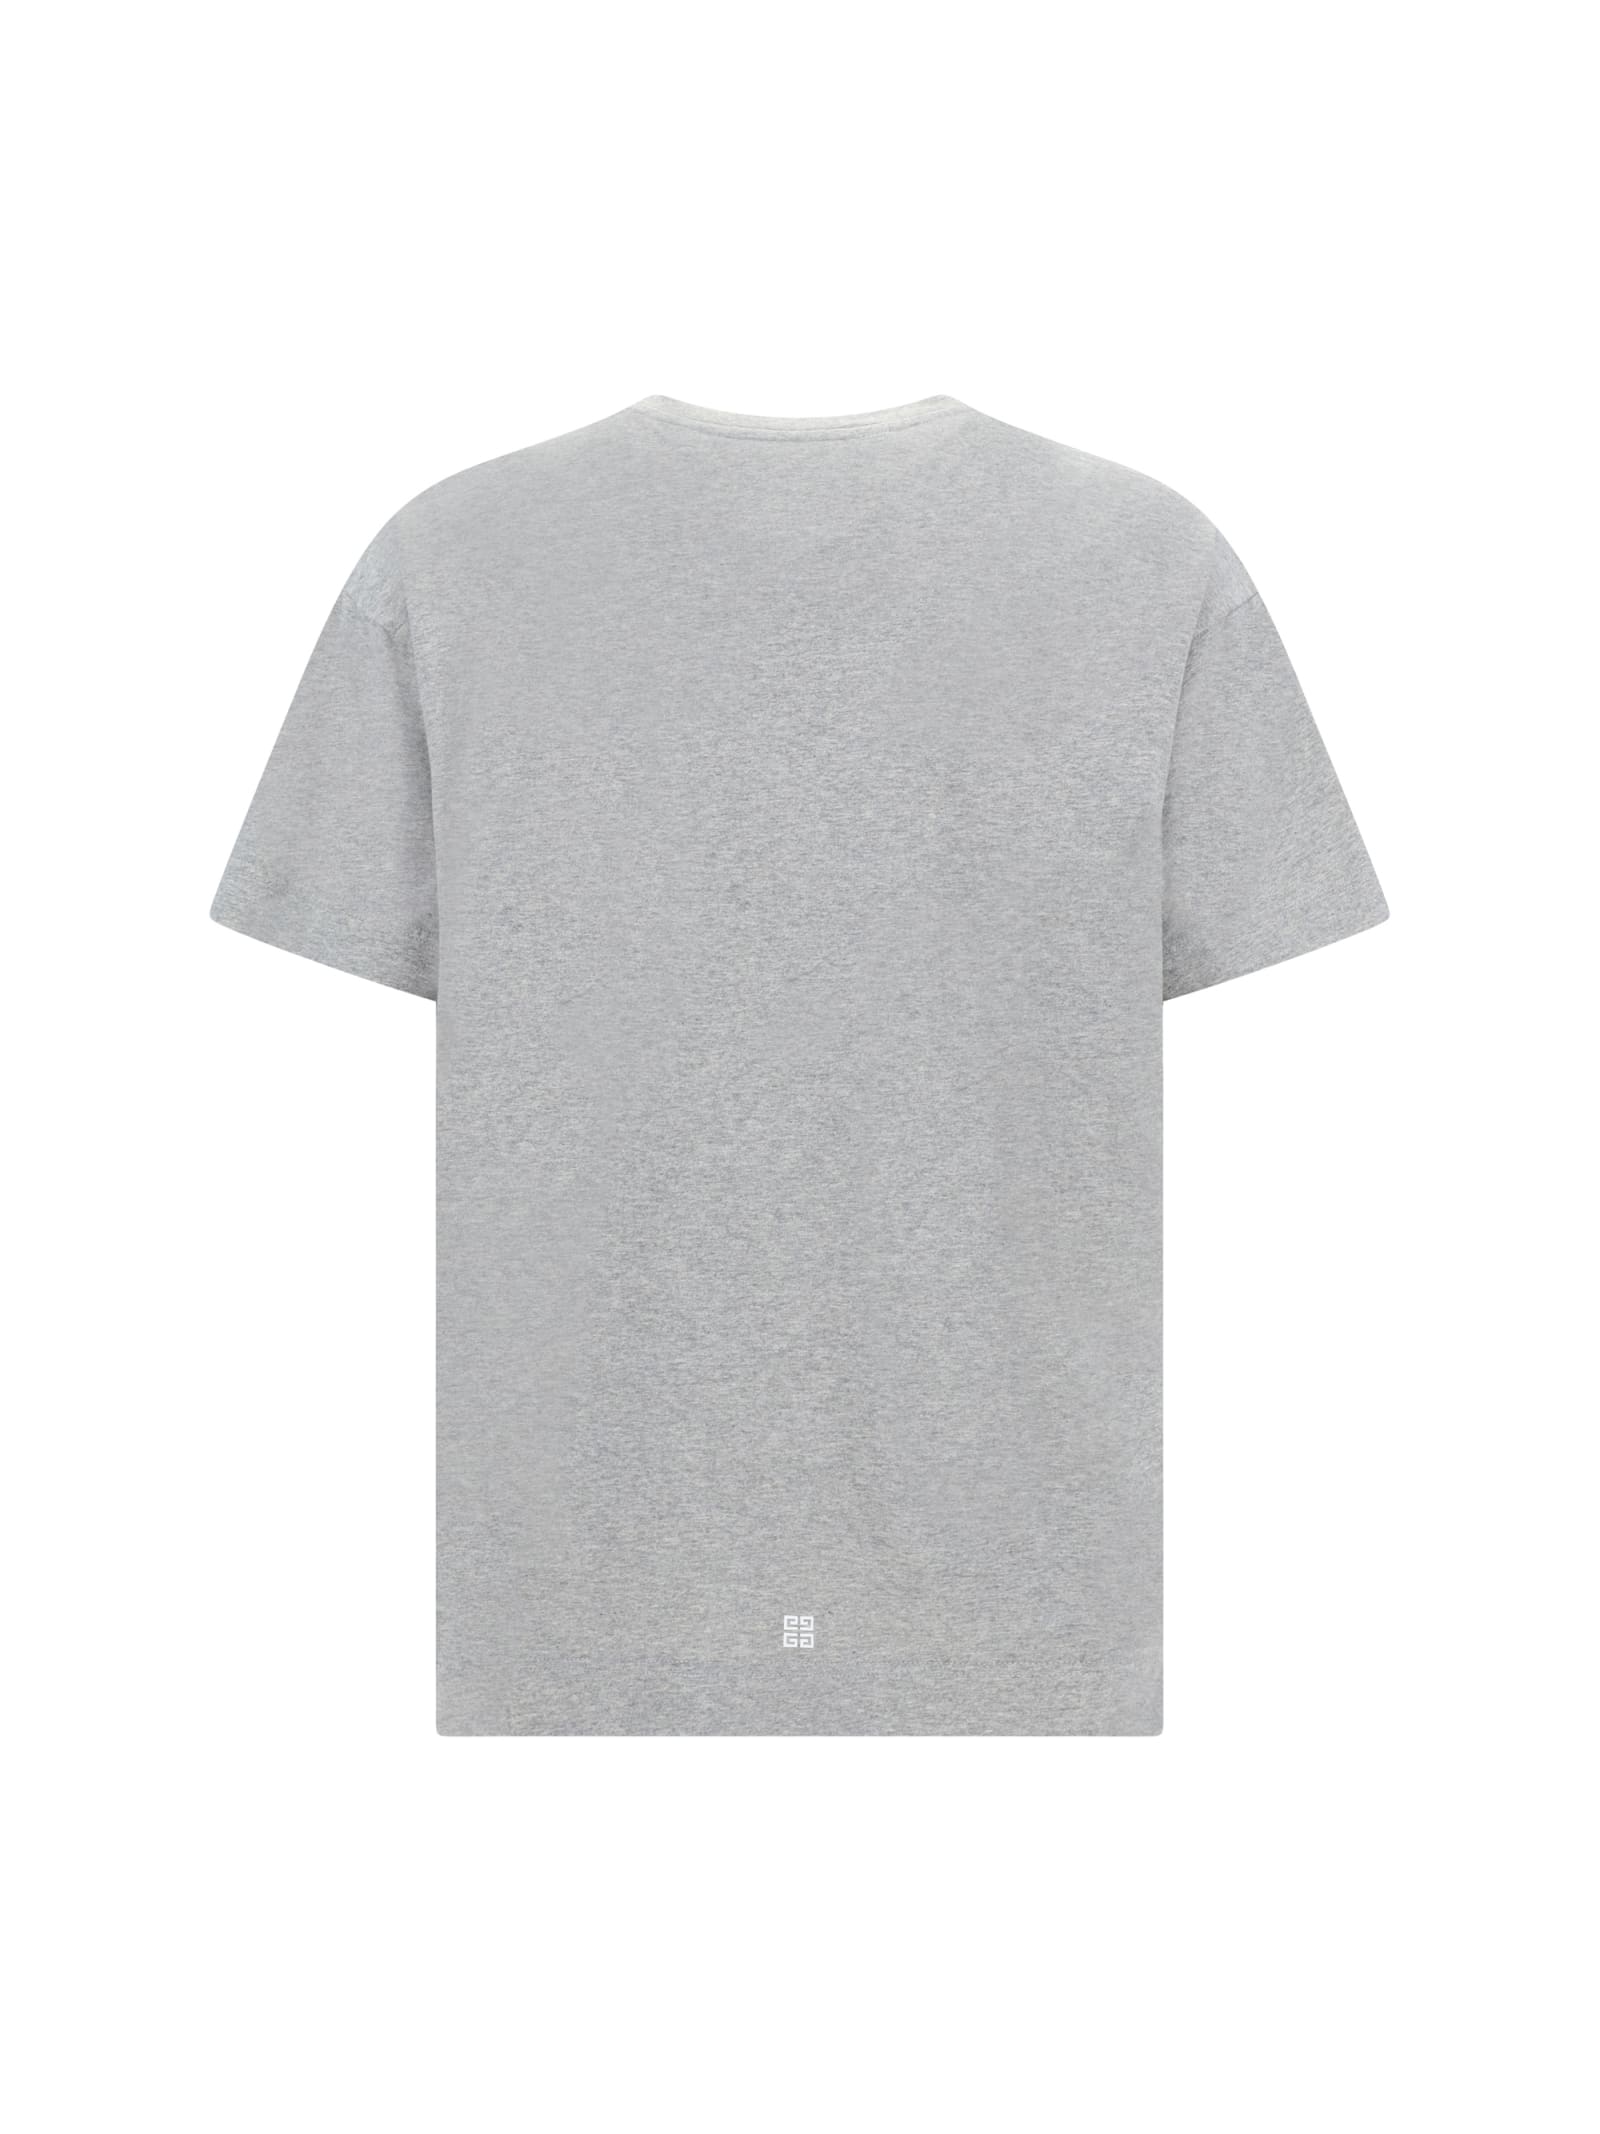 Shop Givenchy T-shirt In Light Grey Melang